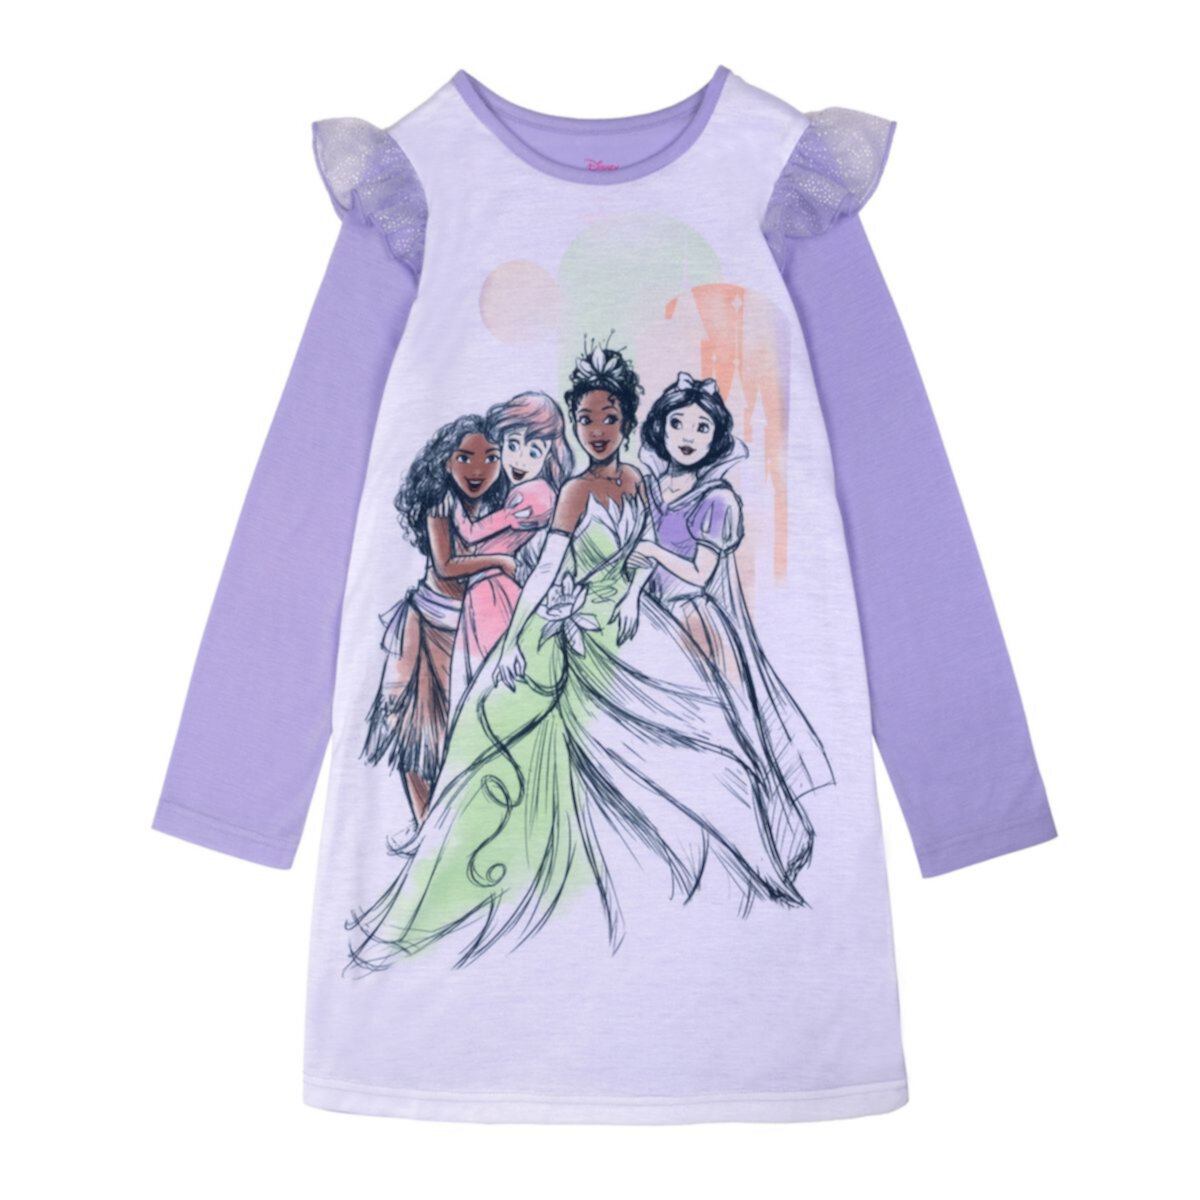 Ночная рубашка принцессы Диснея для девочек 4–8 лет с рюшами и плечами Licensed Character